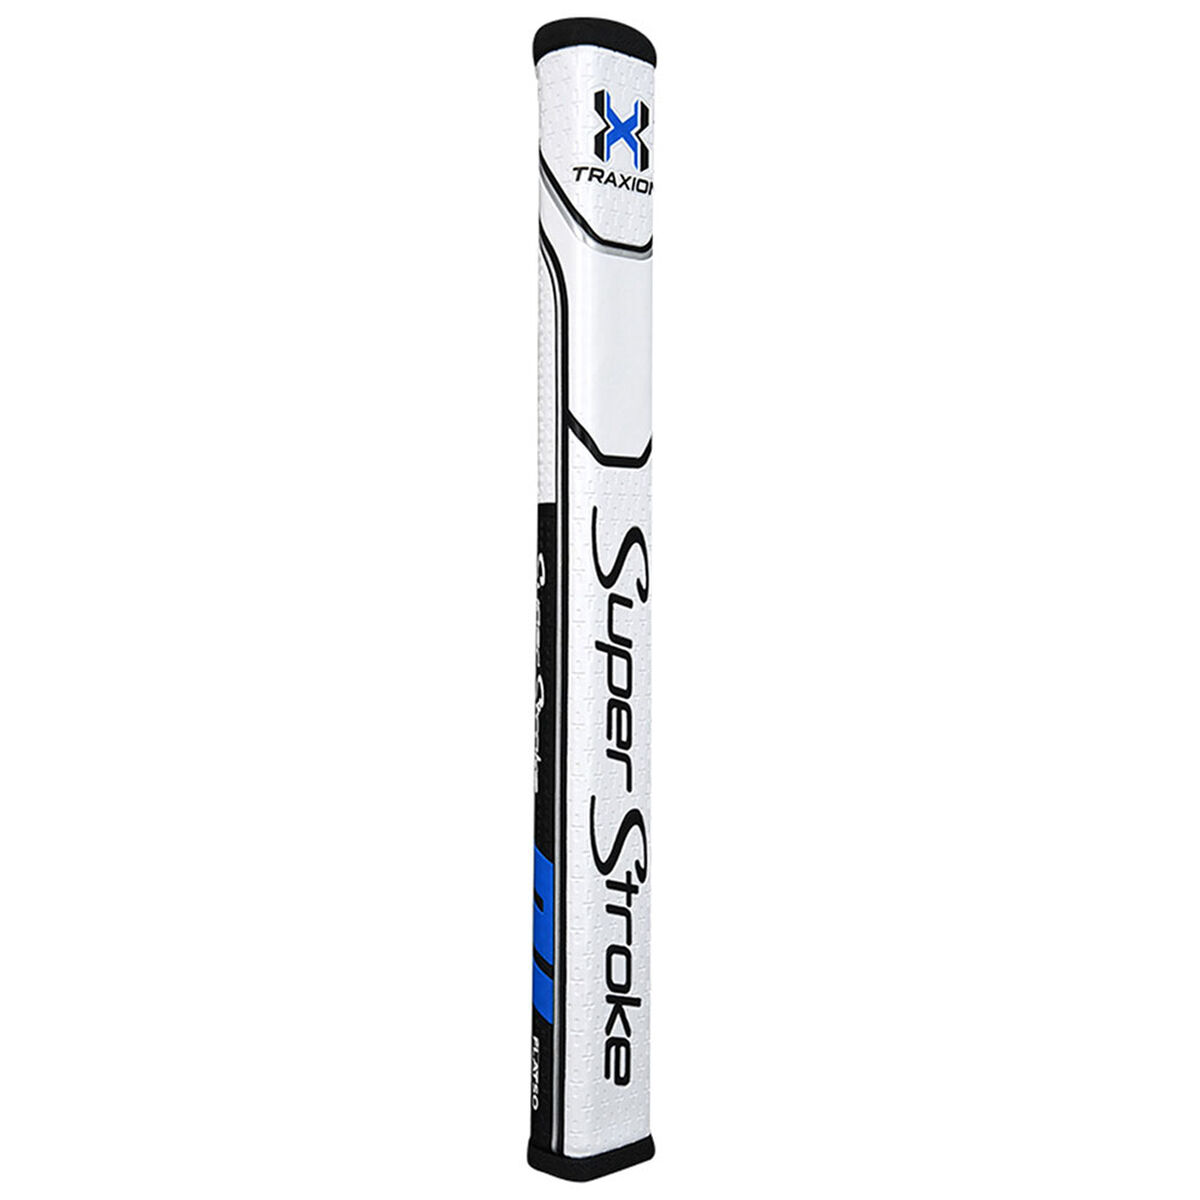 Poignée de Golf Putter SuperStroke Traxion Flatso 1.0, homme, Noir/Bleu/Blanc | Online Golf